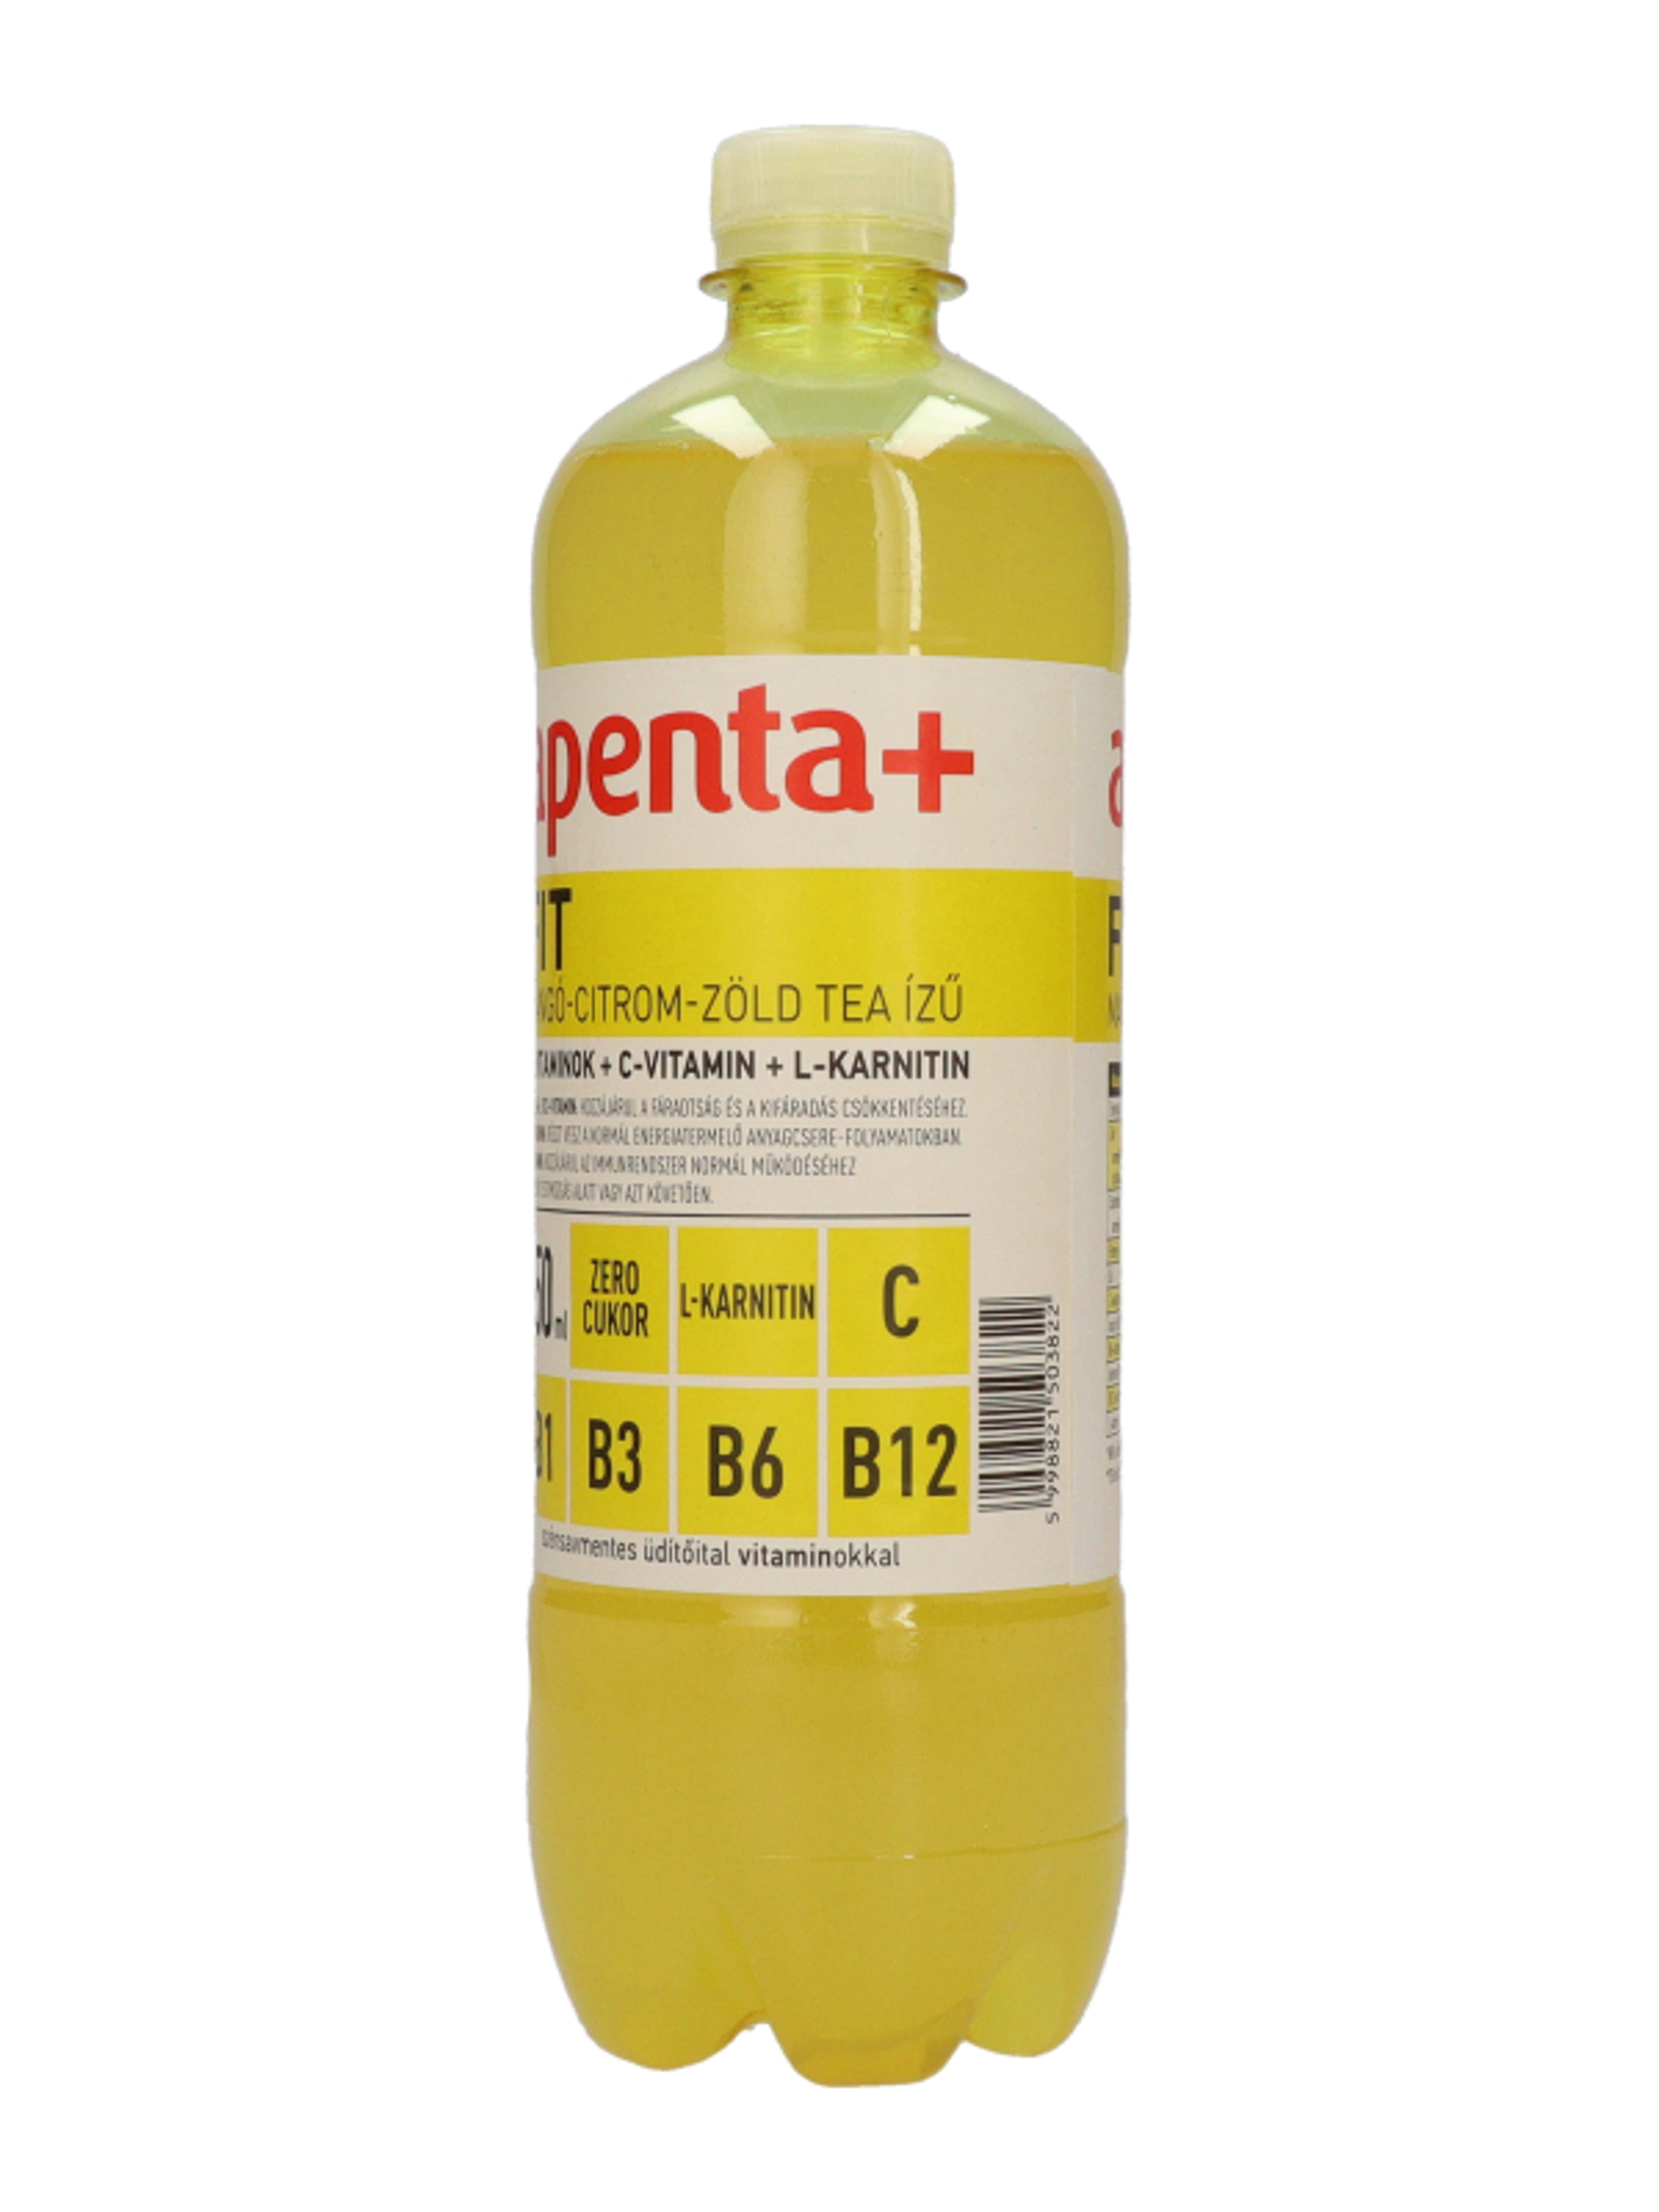 Apenta + fit - 750 ml-3